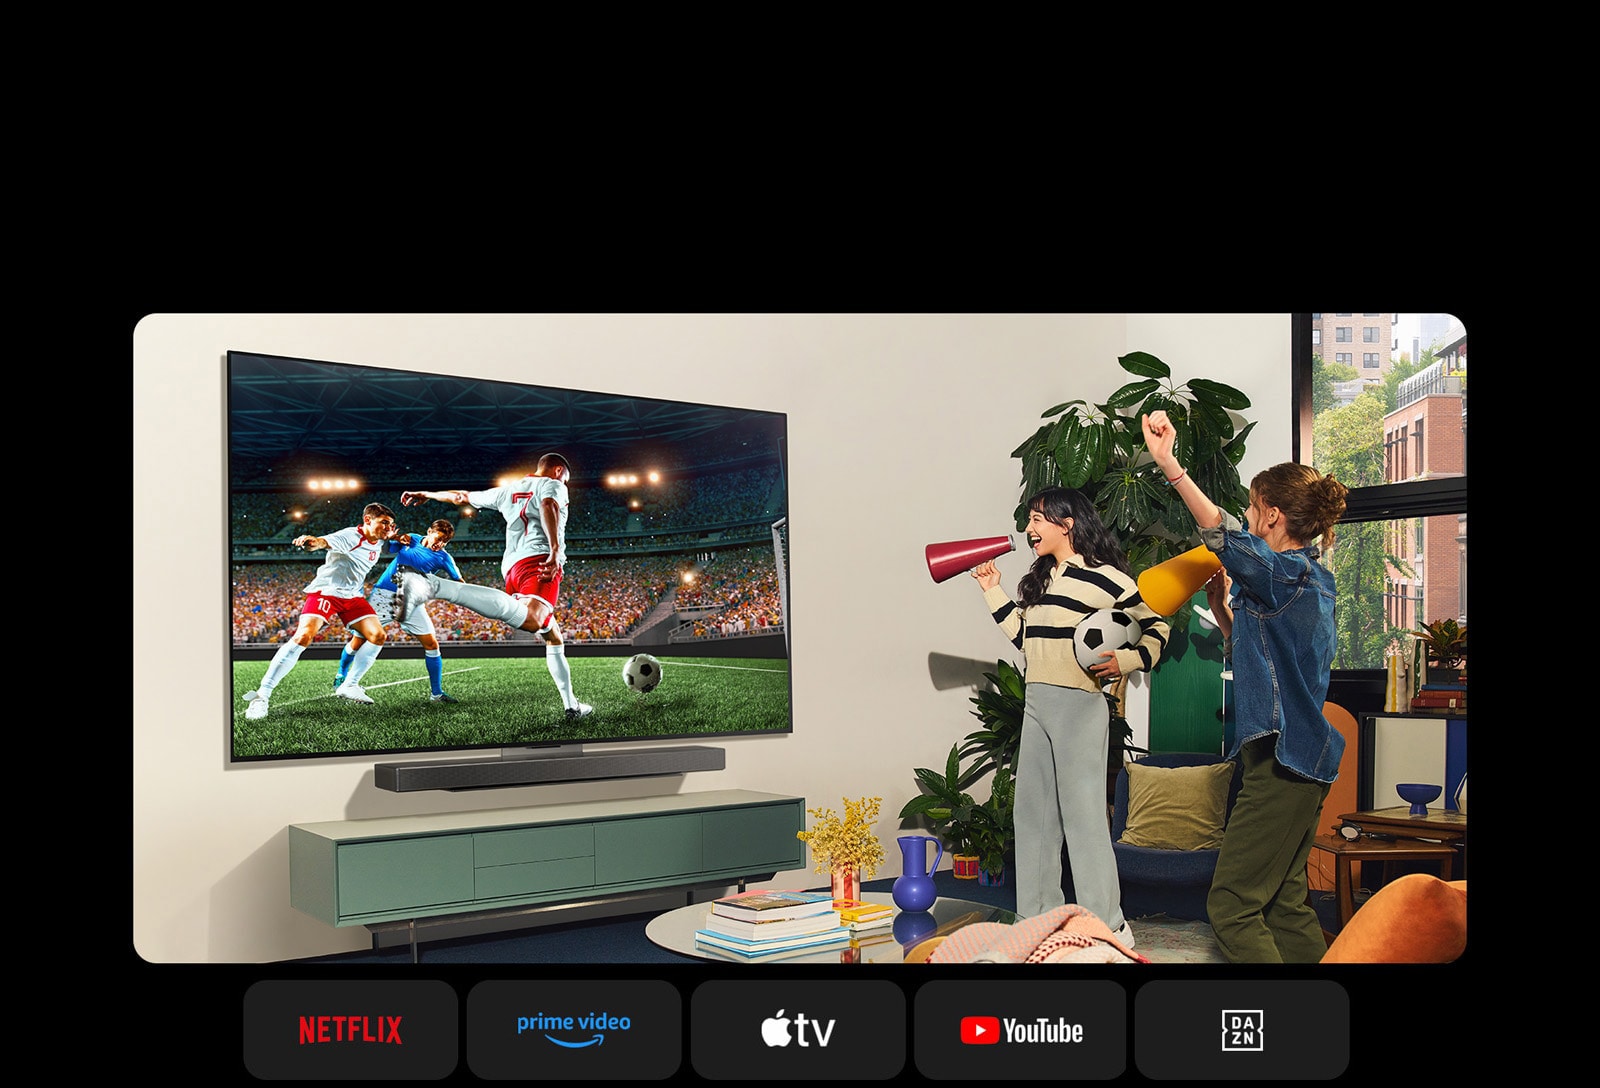 Dvije žene gledaju nogometnu utakmicu u udobnom stambenom prostoru. Jedna žena drži nogometnu loptu, a obje navijaju za svoju momčad s žutim i crvenim megafonima. Ispod se prikazuju sljedeći logotipovi. Netflix, Amazon Prime Video, Apple TV, Youtube, ESPN i DAZN.